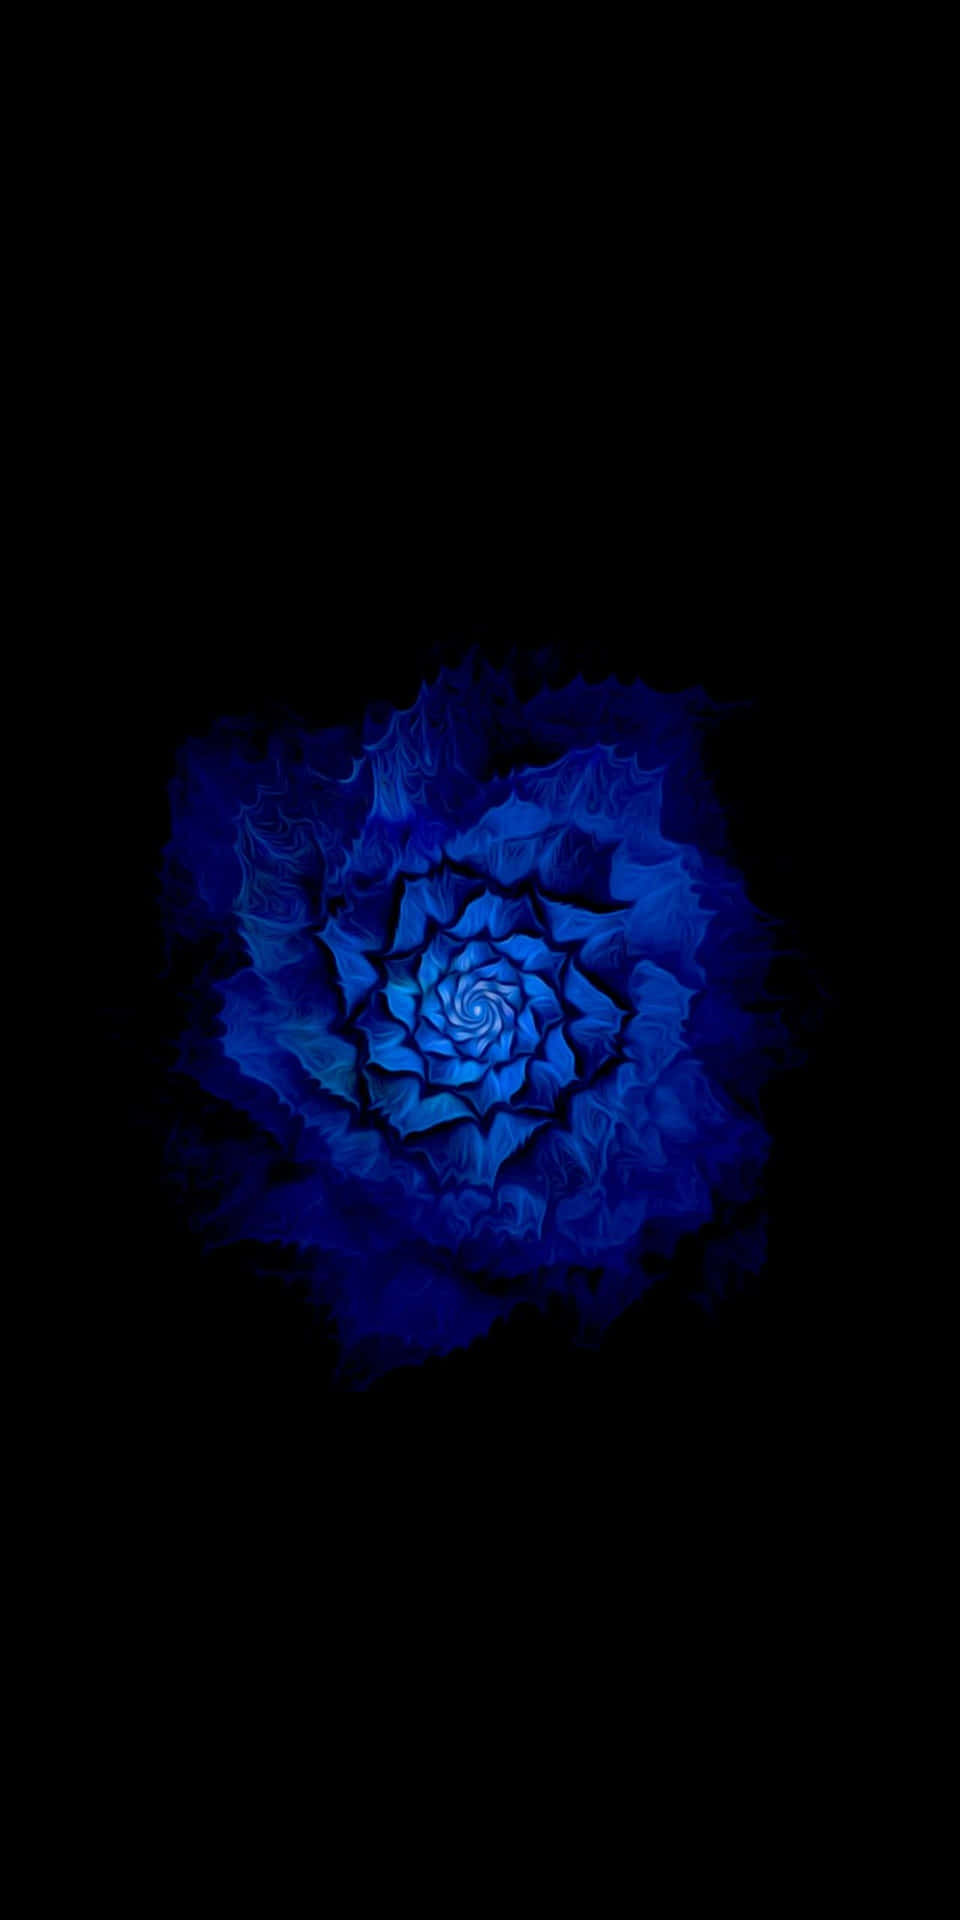 Enblå Blomma På En Svart Bakgrund Wallpaper